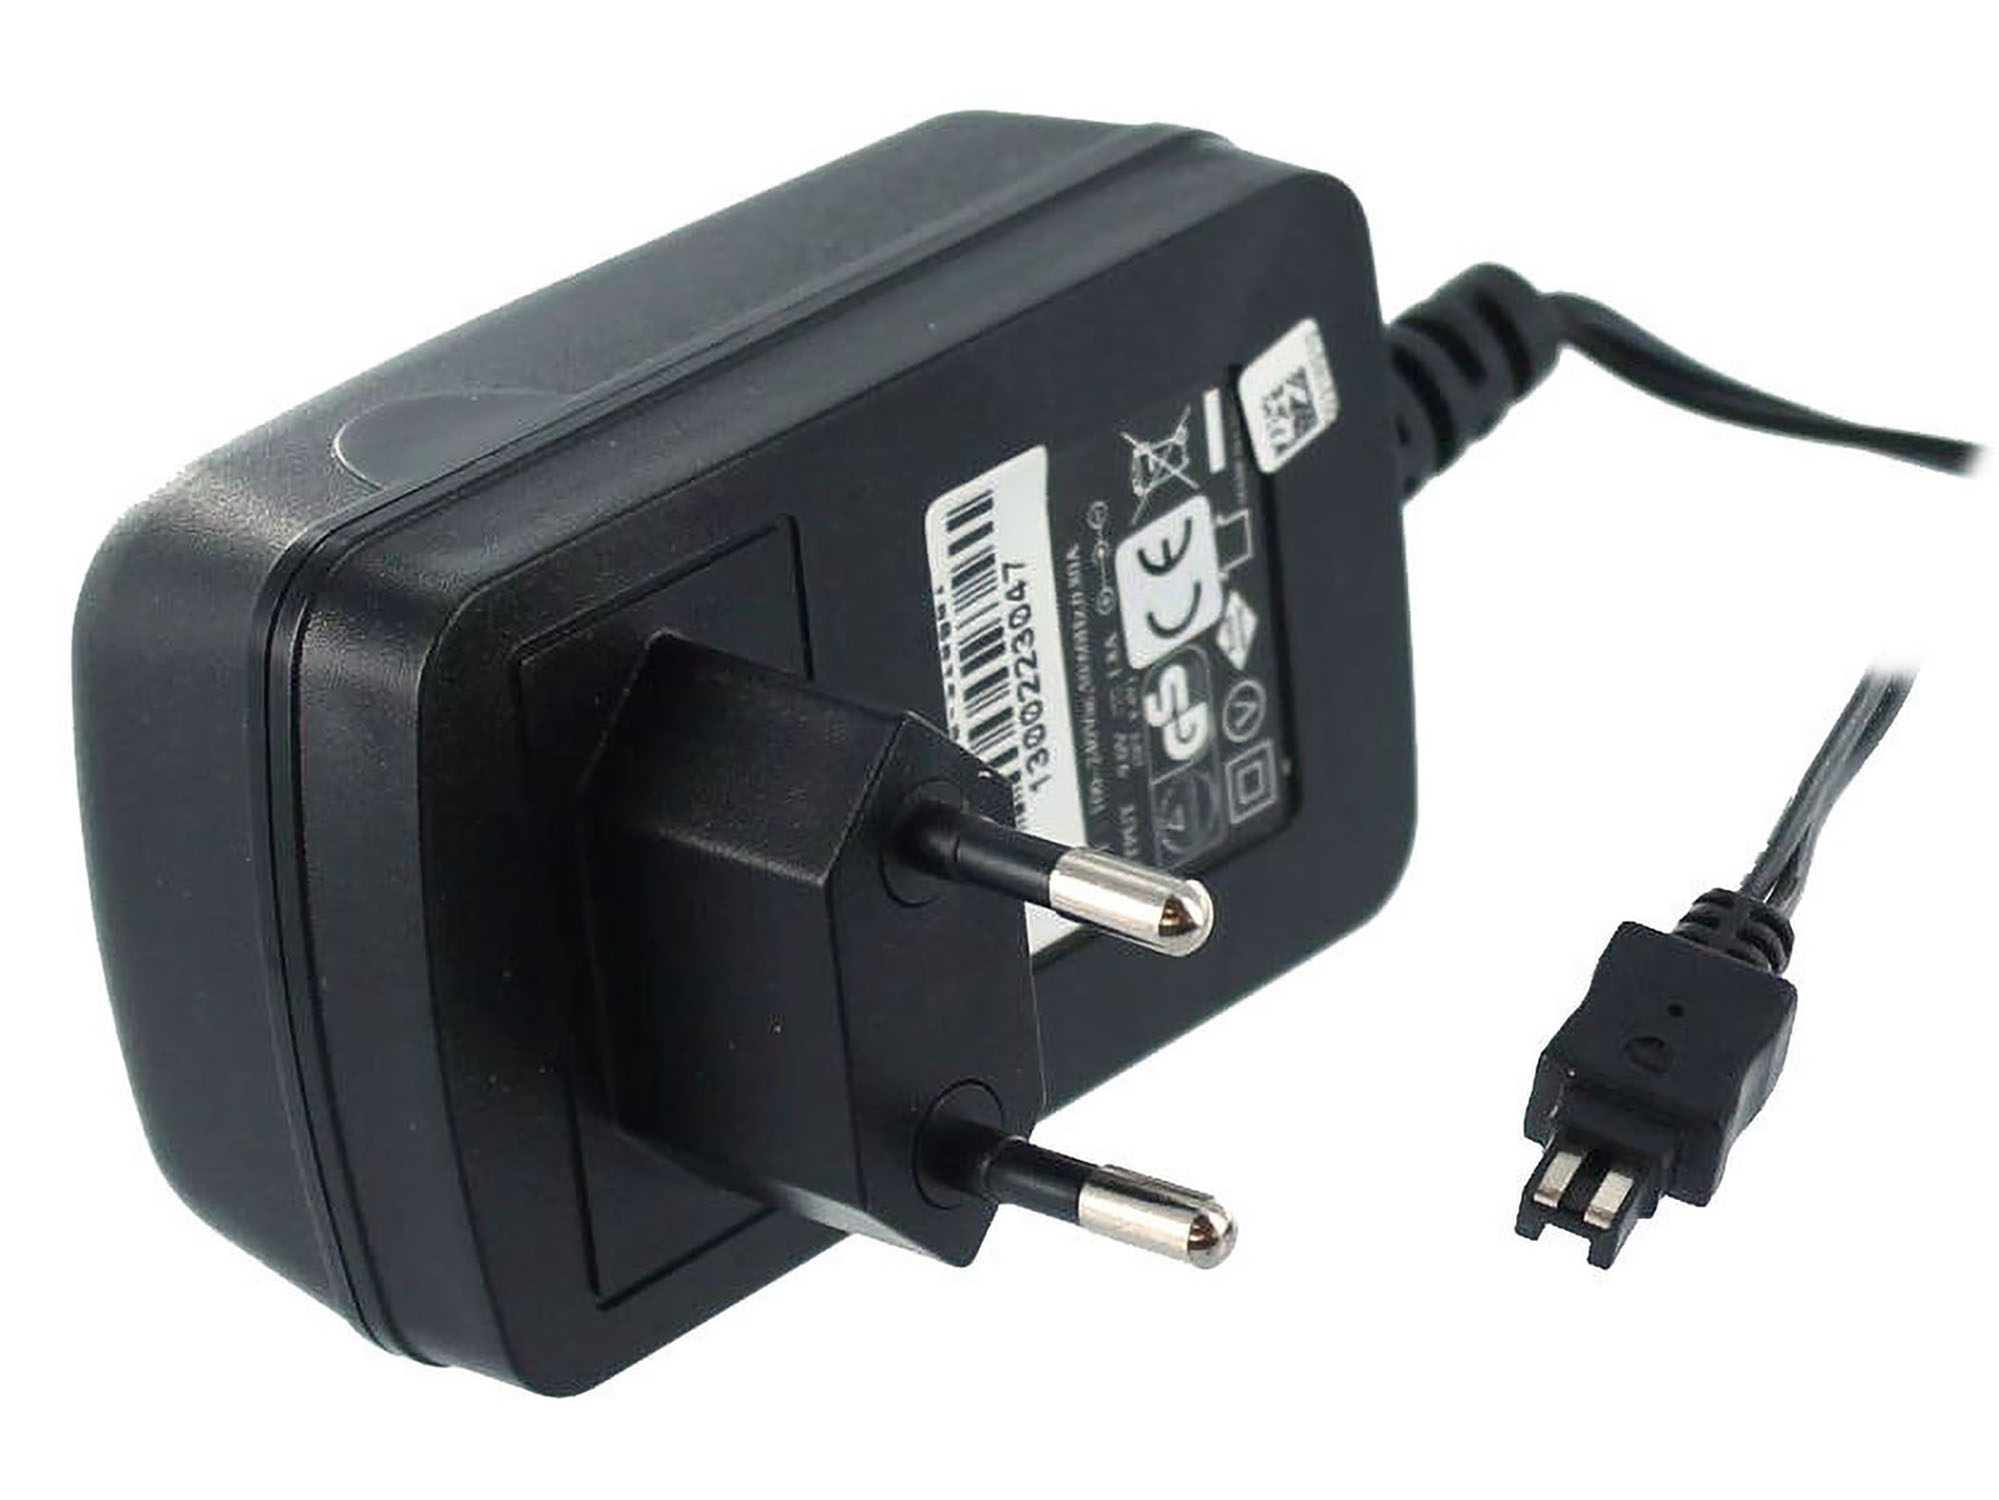 DCR-HC23E schwarz MOBILOTEC Volt, Sony Sony, Netzteil/Ladegerät mit Netzteil kompatibel 8.4